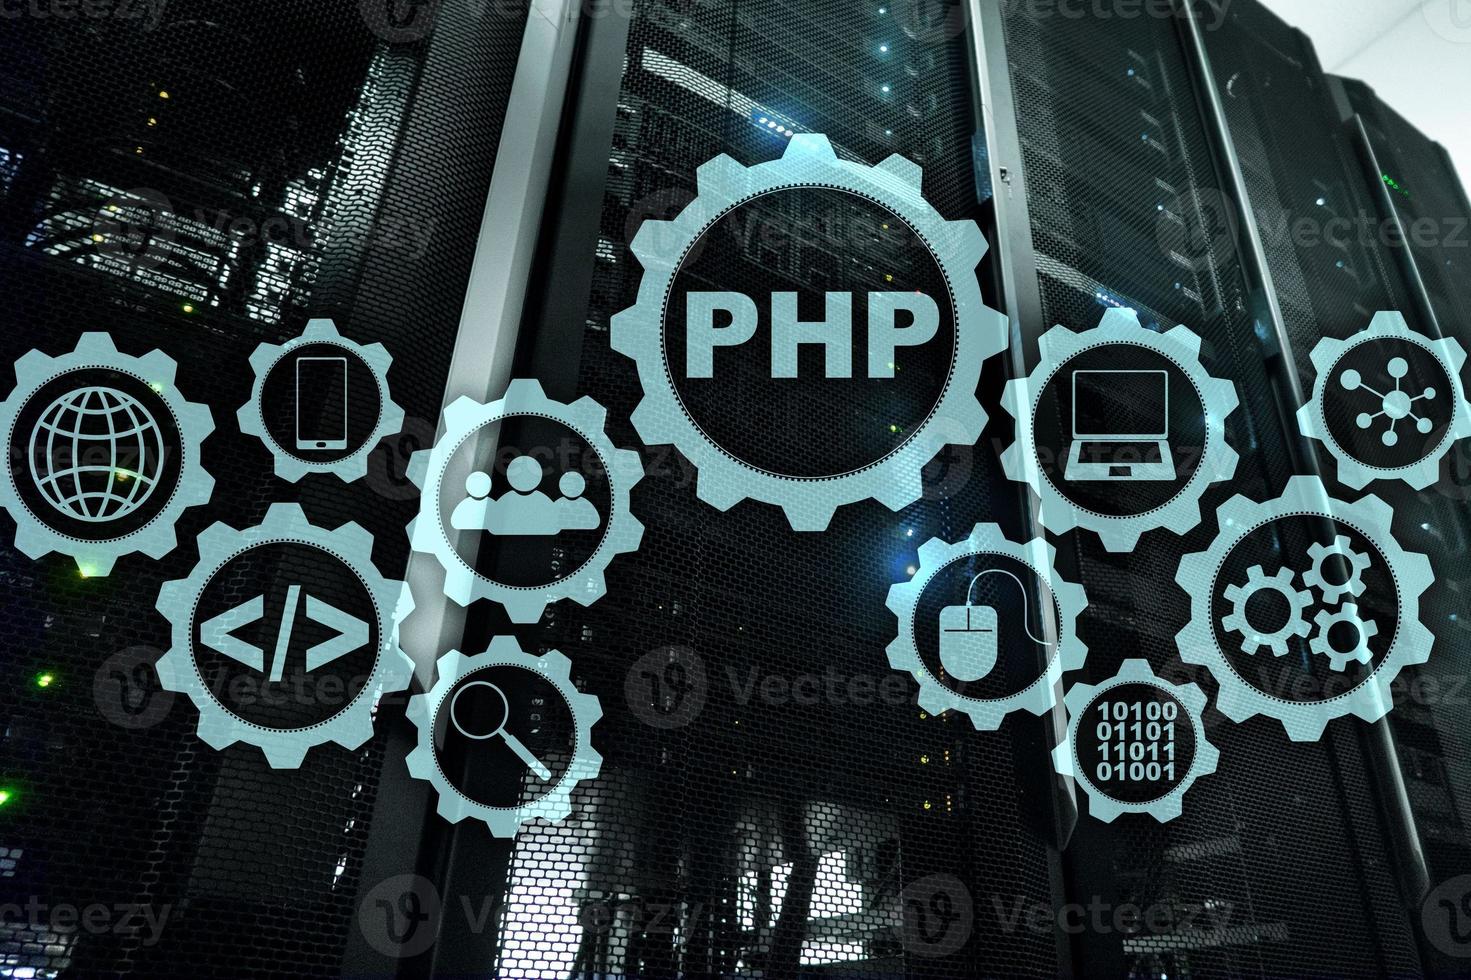 langage de programmation php. développer des technologies de programmation et de codage. concept d'espace cyber photo